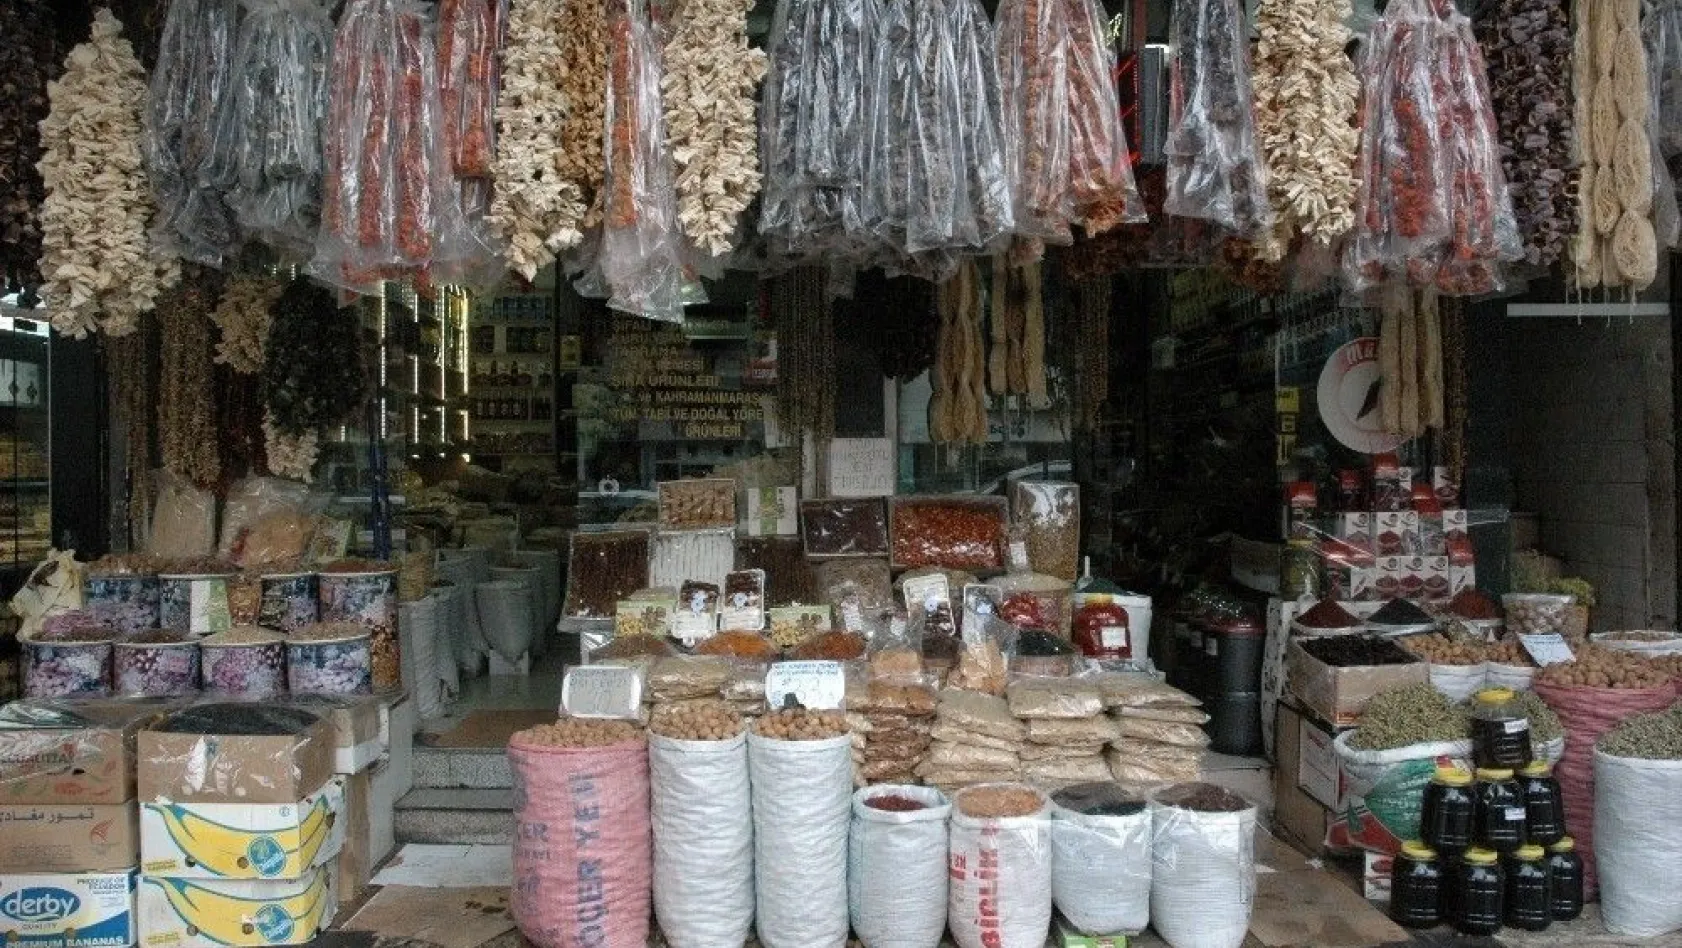 Kahramanmaraş'ta kışlık yiyecekler tezgahları süsledi
